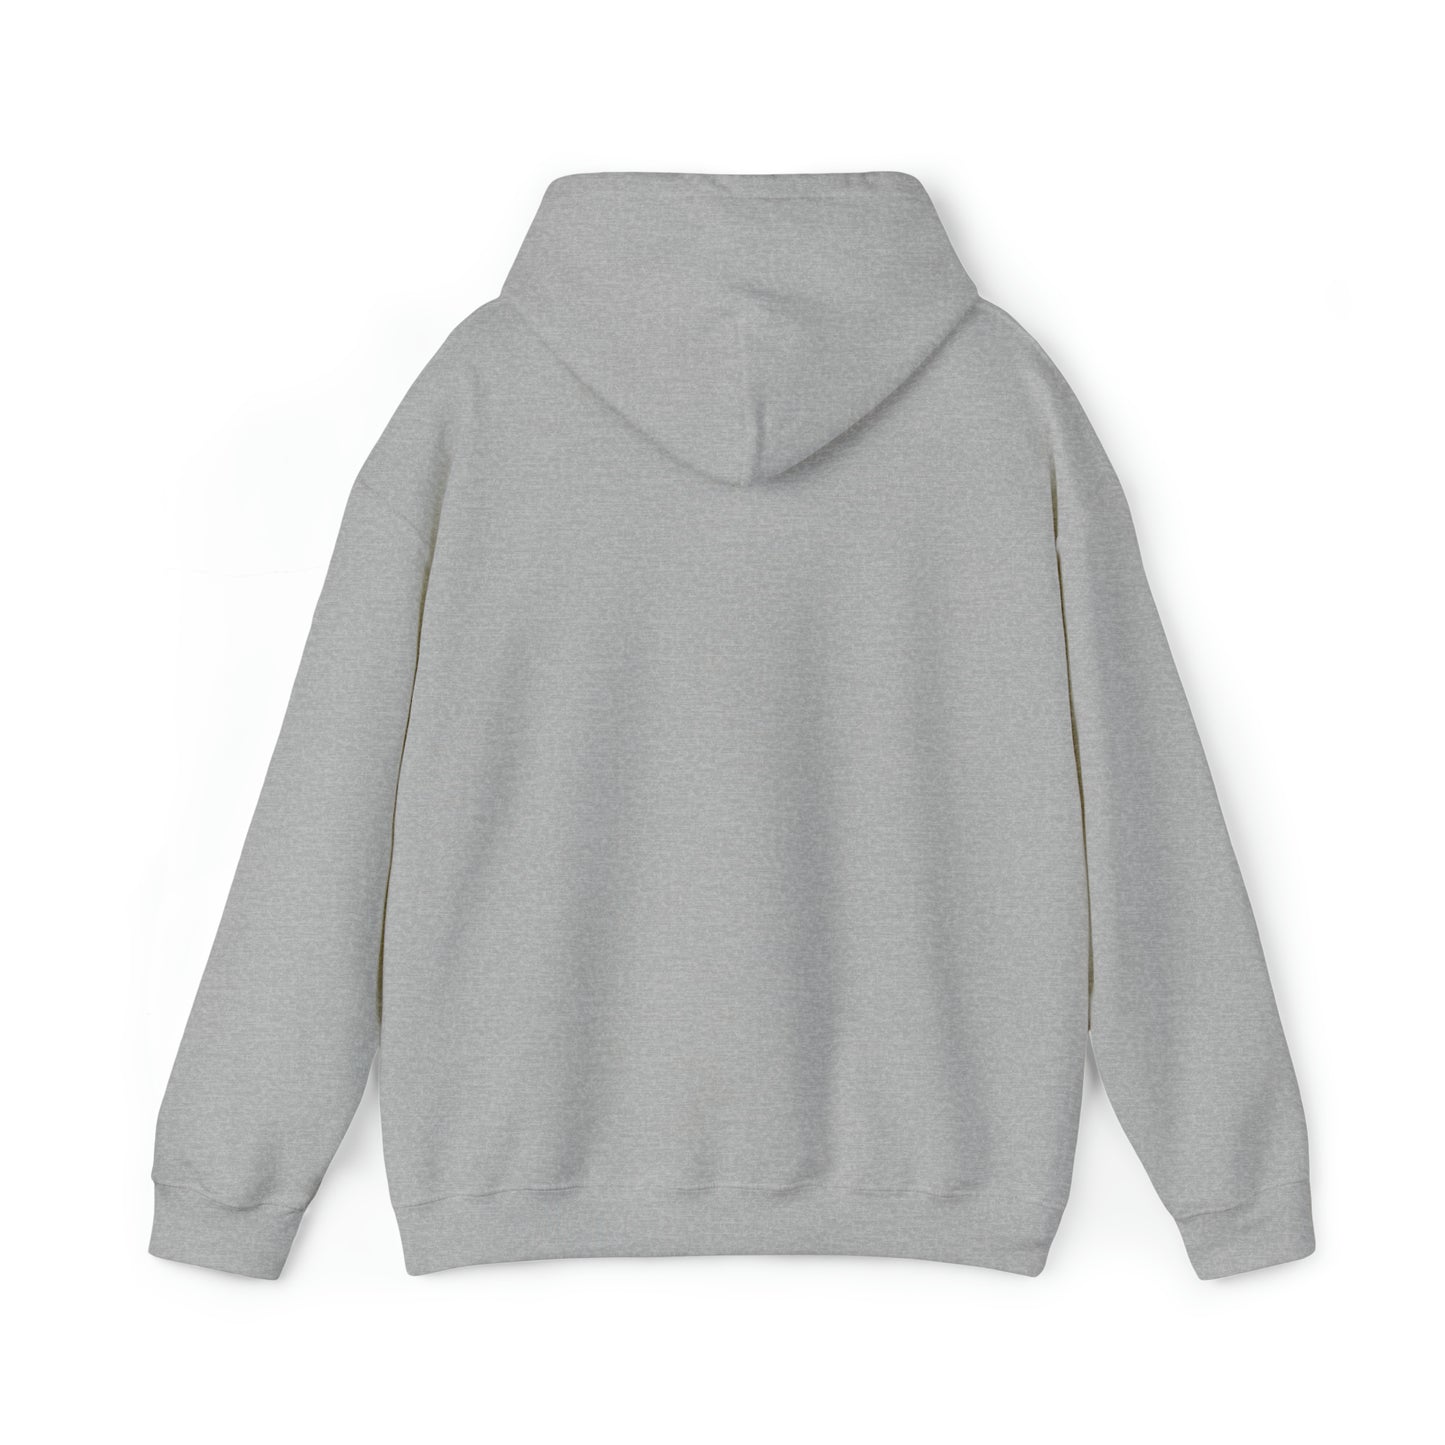 Eat, Sleep, Read, Repeat. Adult Unisex Heavy Blend™ Hooded Sweatshirt